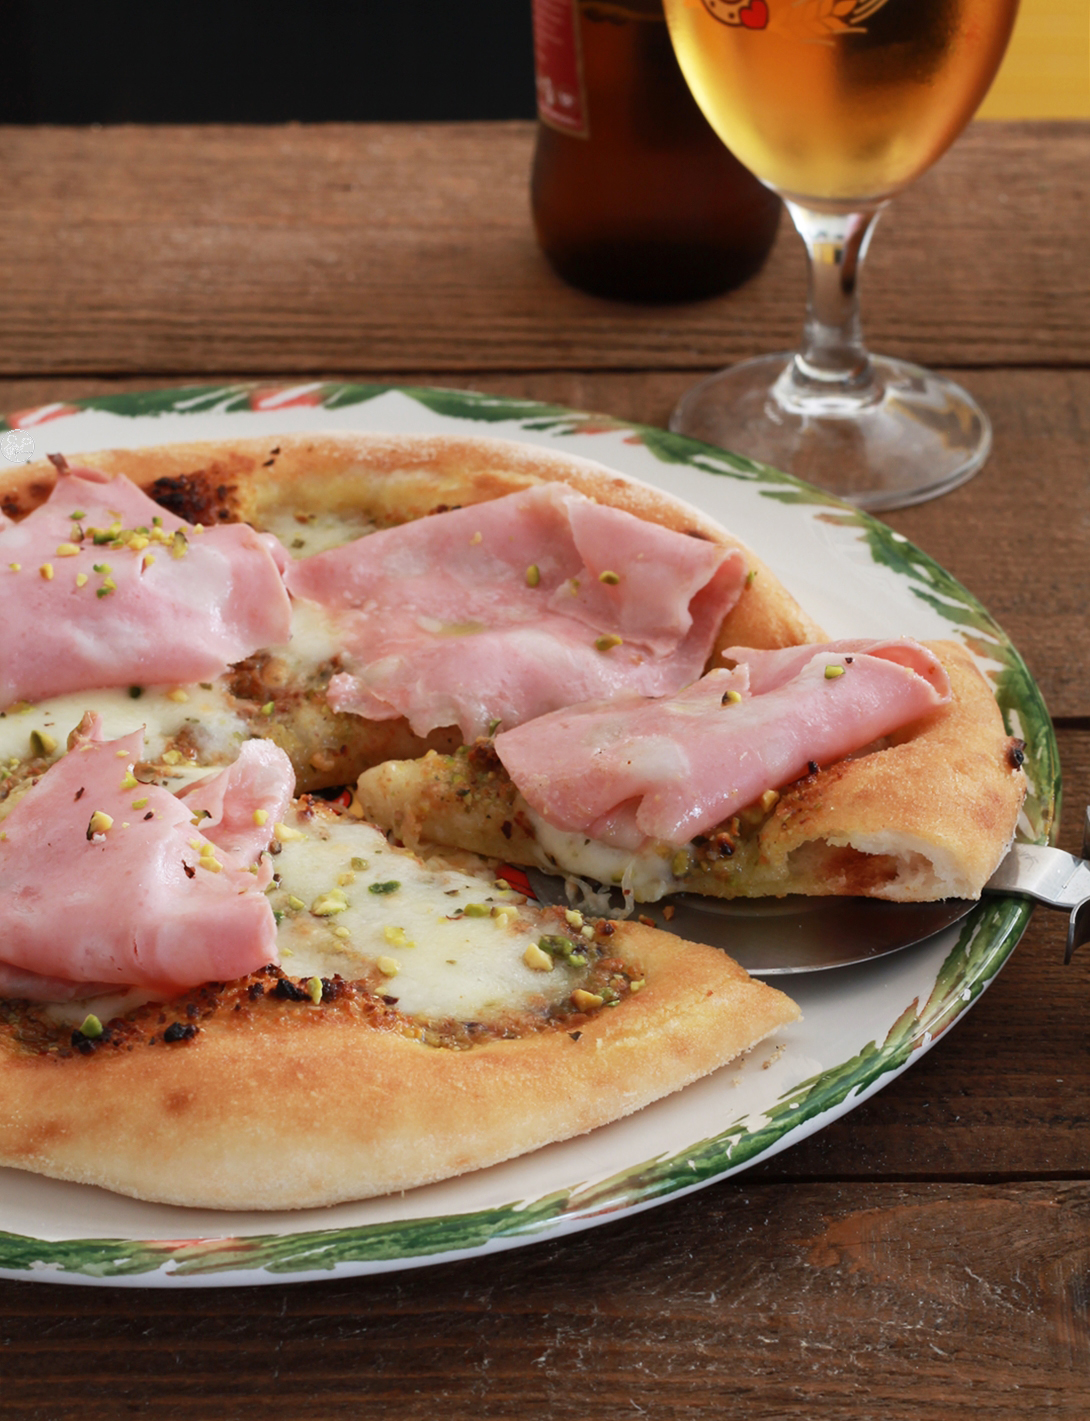 Pizza senza glutine con mortadella e pistacchi - La Cassata Celiaca